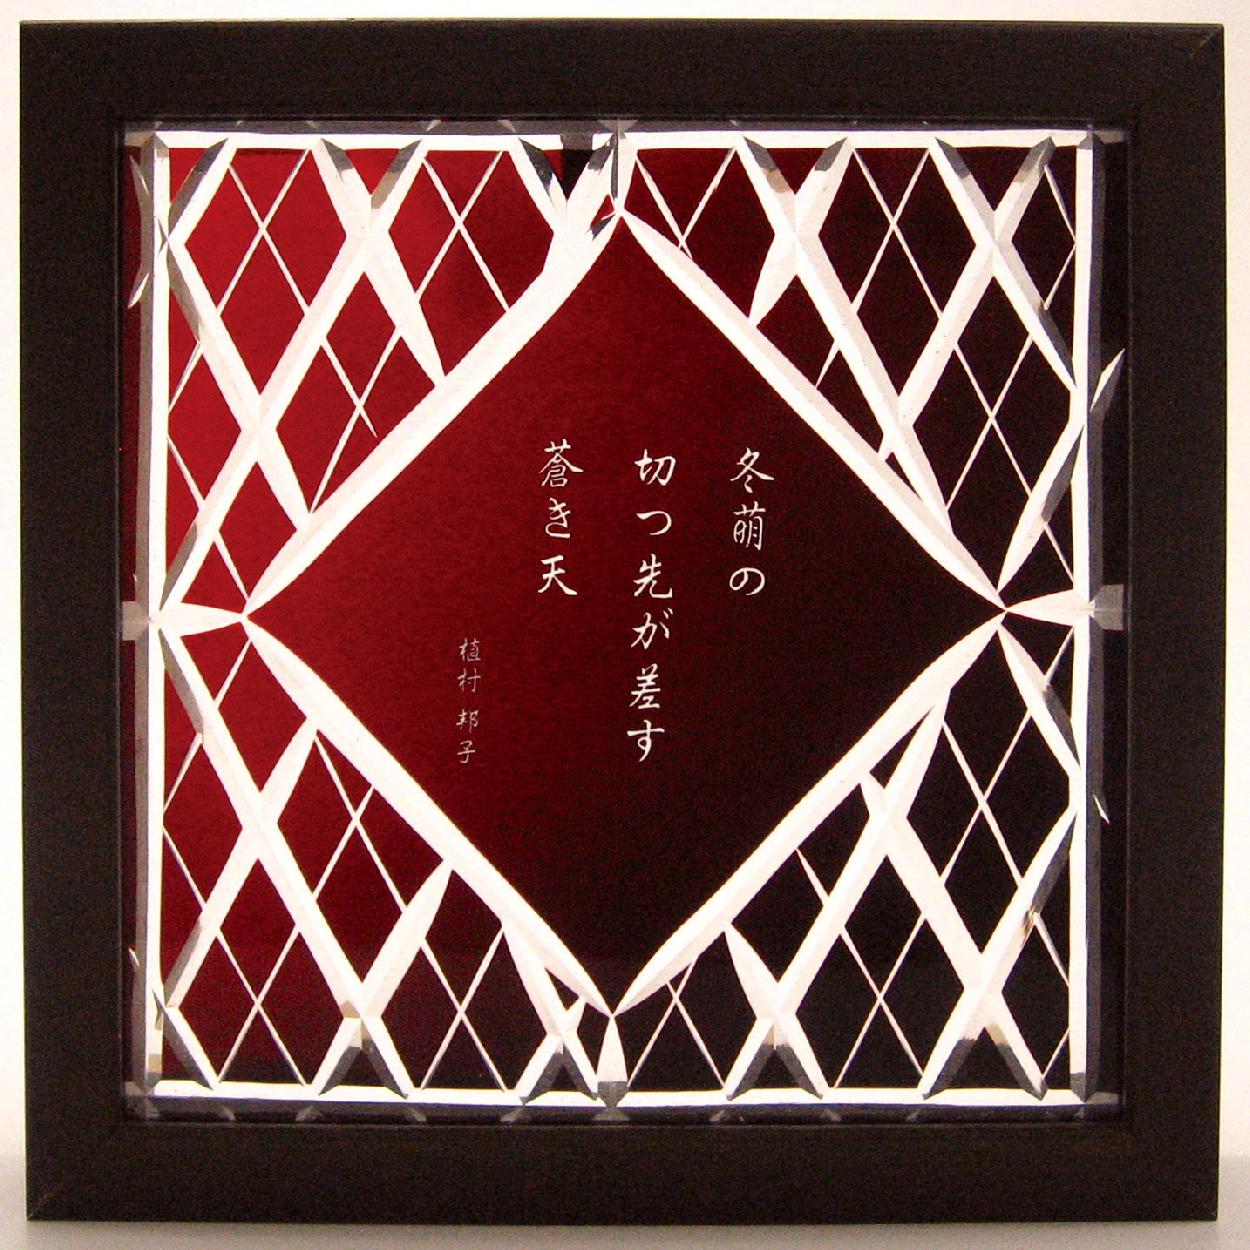 Shinozaki Aiko,Uemura Kuniko, Haïku, poésie de la  vie, 6 avril - 11 avril 2010